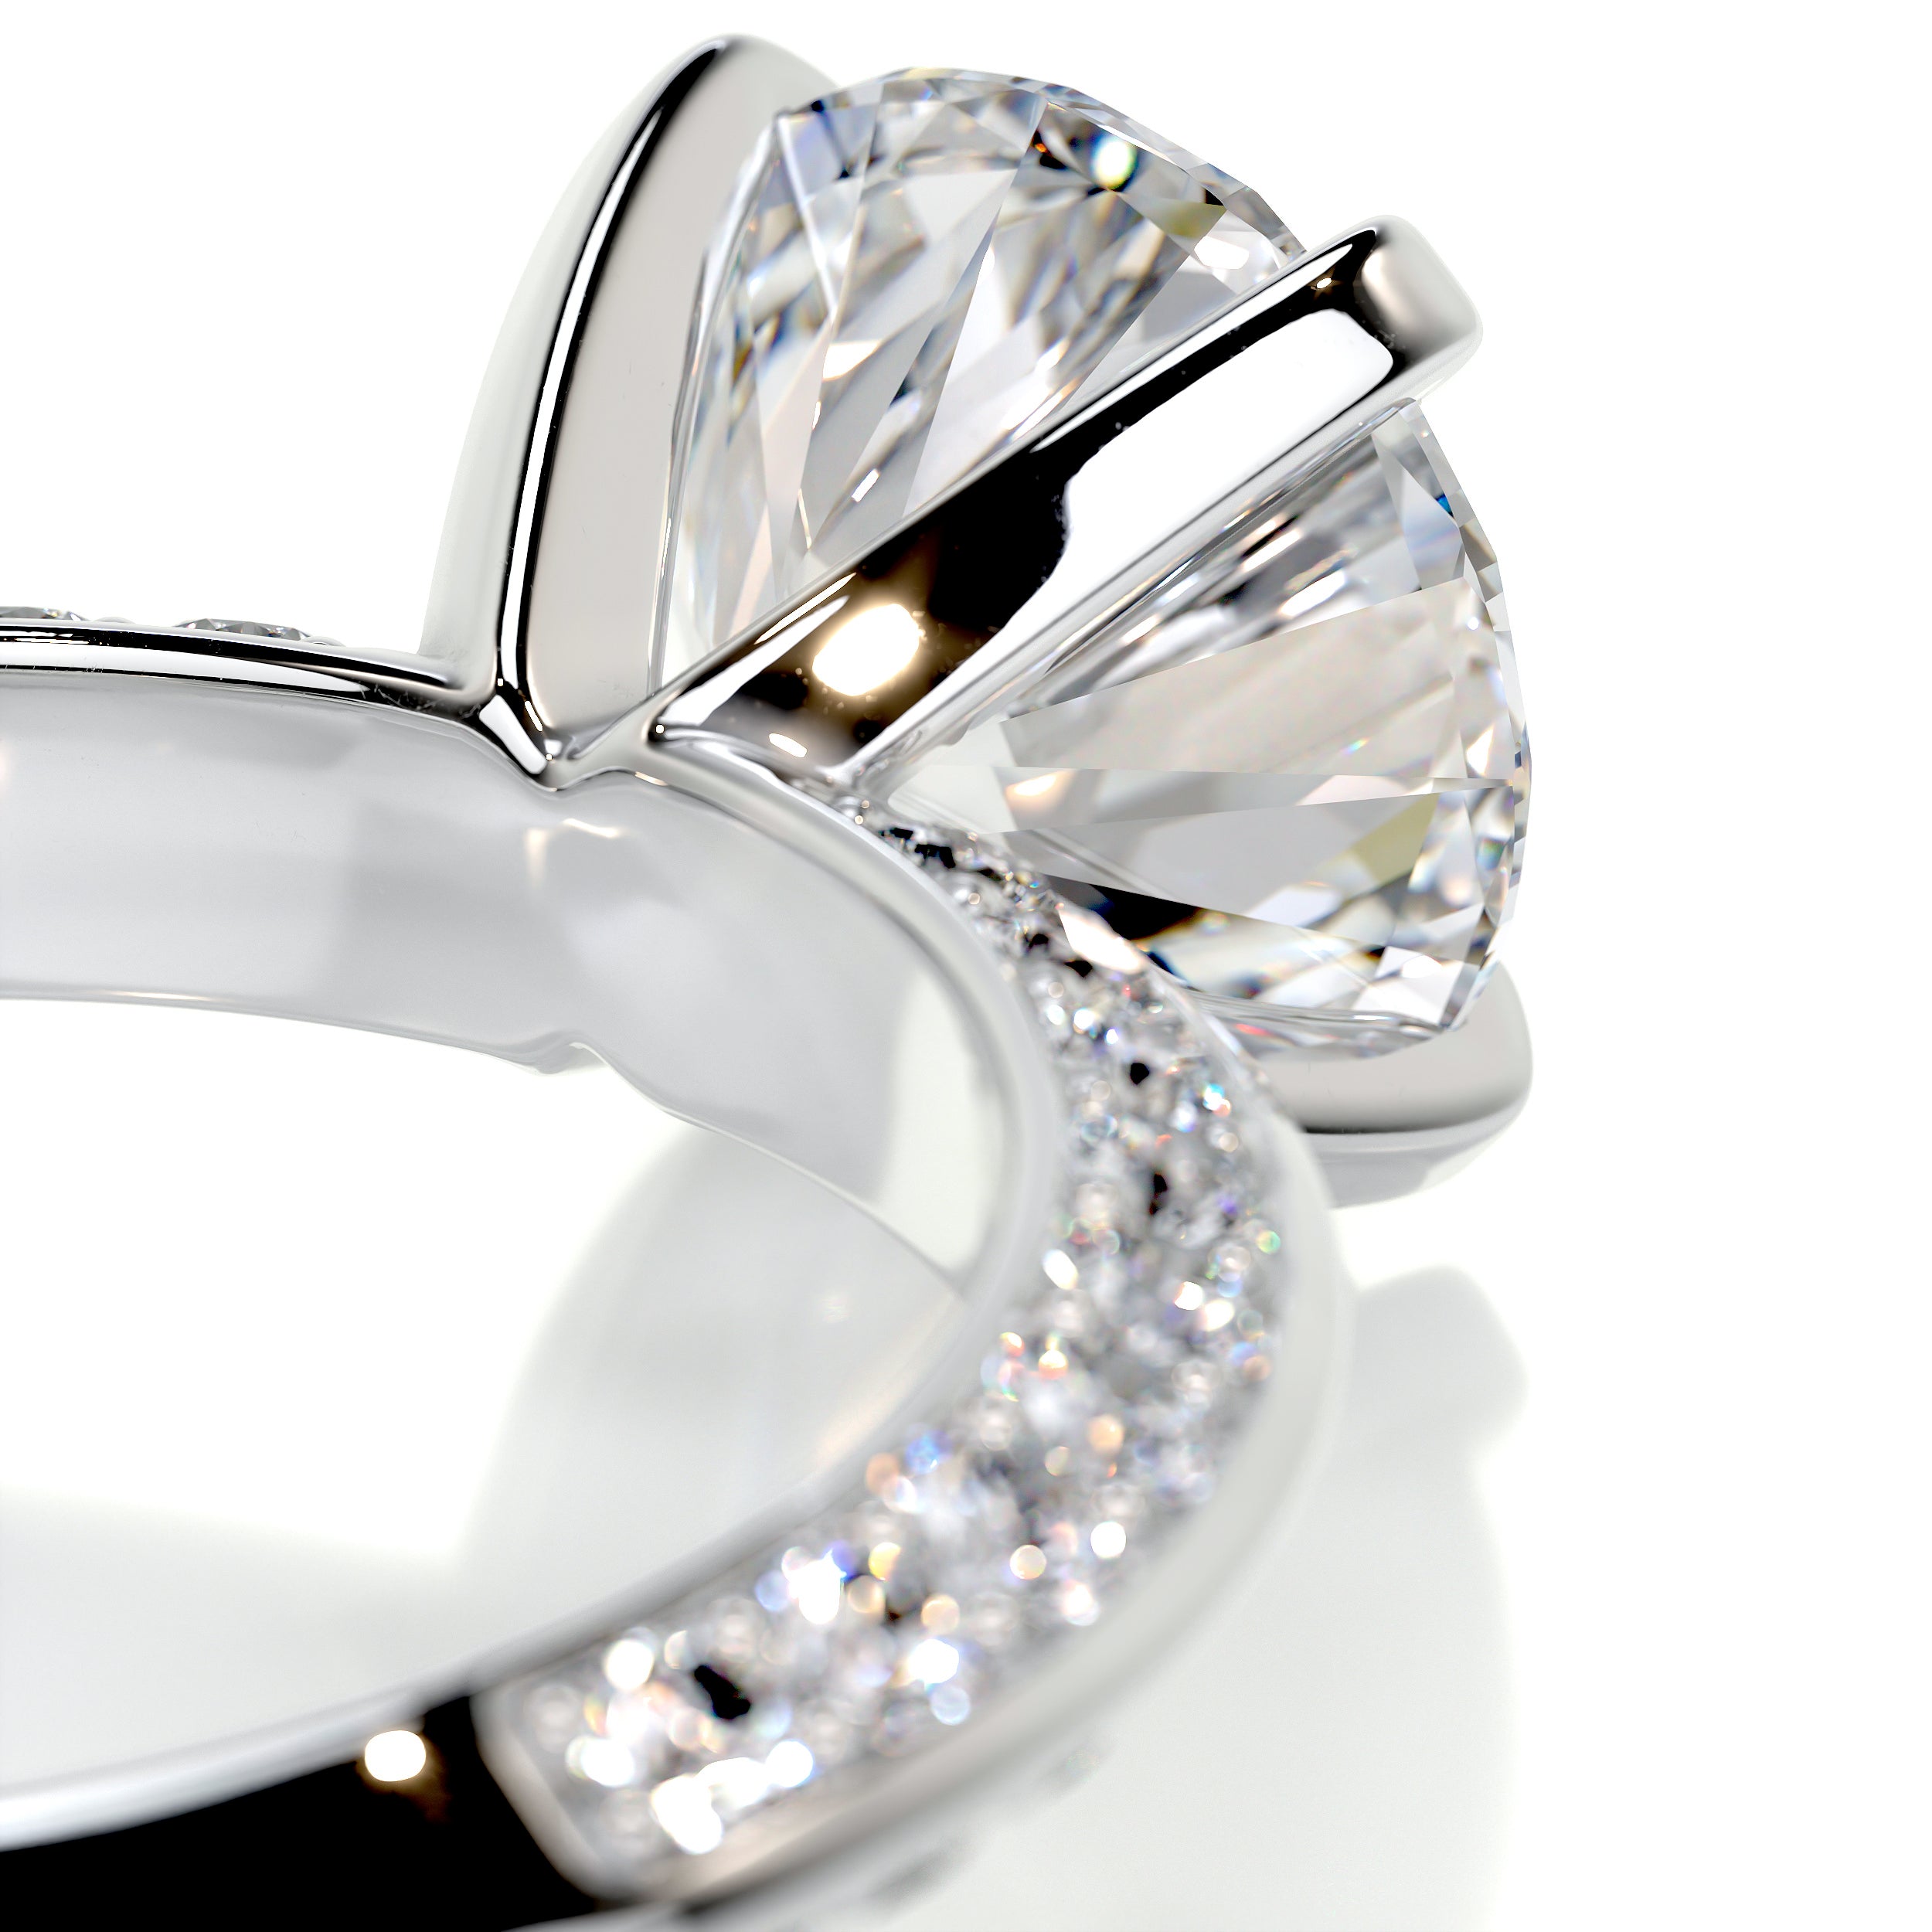 Ariana Diamond Engagement Ring -14K White Gold